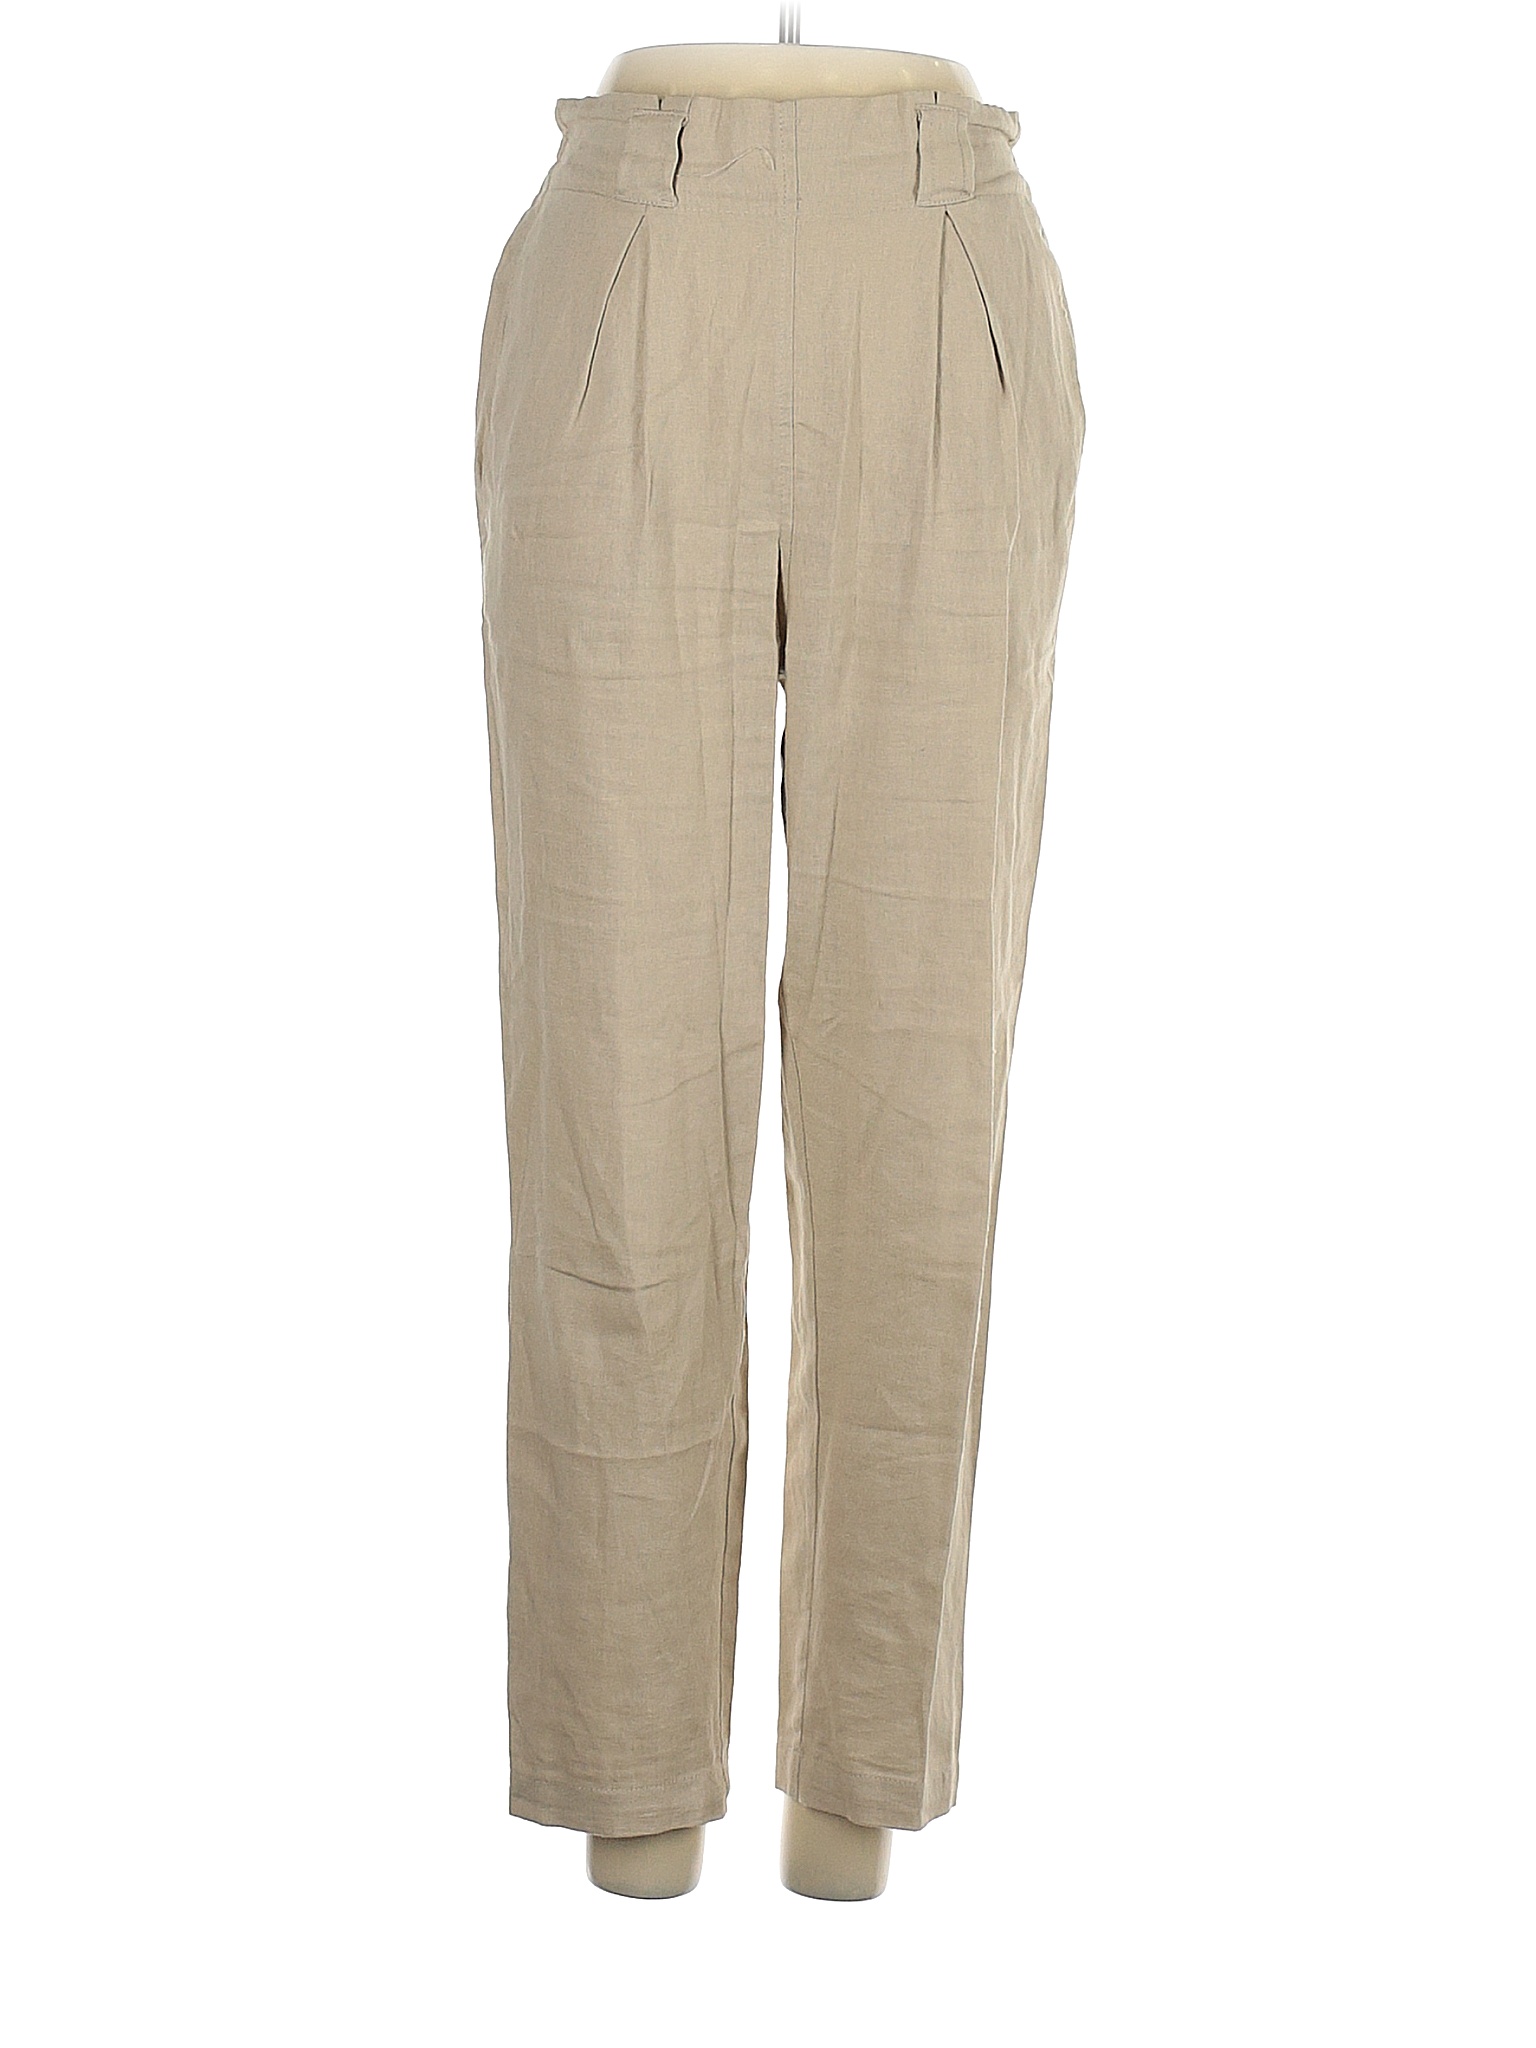 Max Studio Tan Linen Pants Size XS - 56% off | thredUP